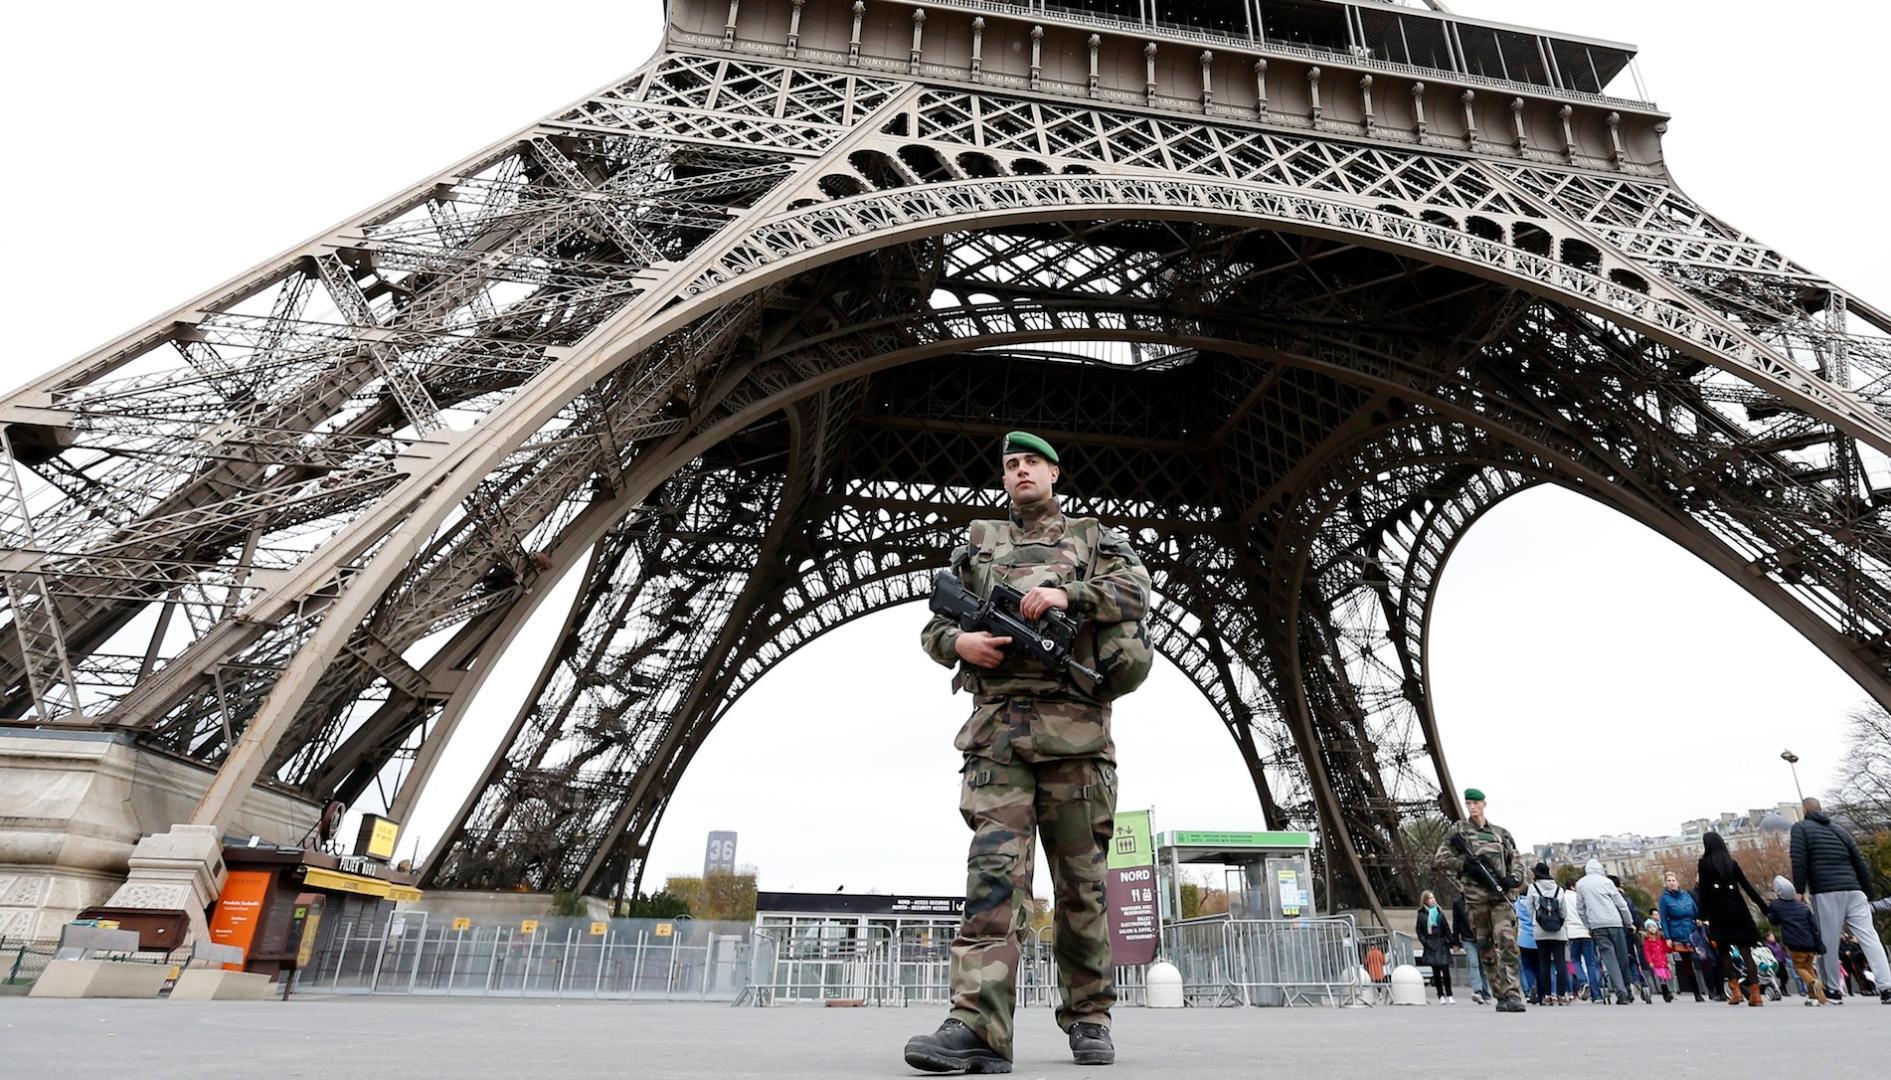 Paris Stadium Attack Fits Goals of Islamic State - Fair Observer